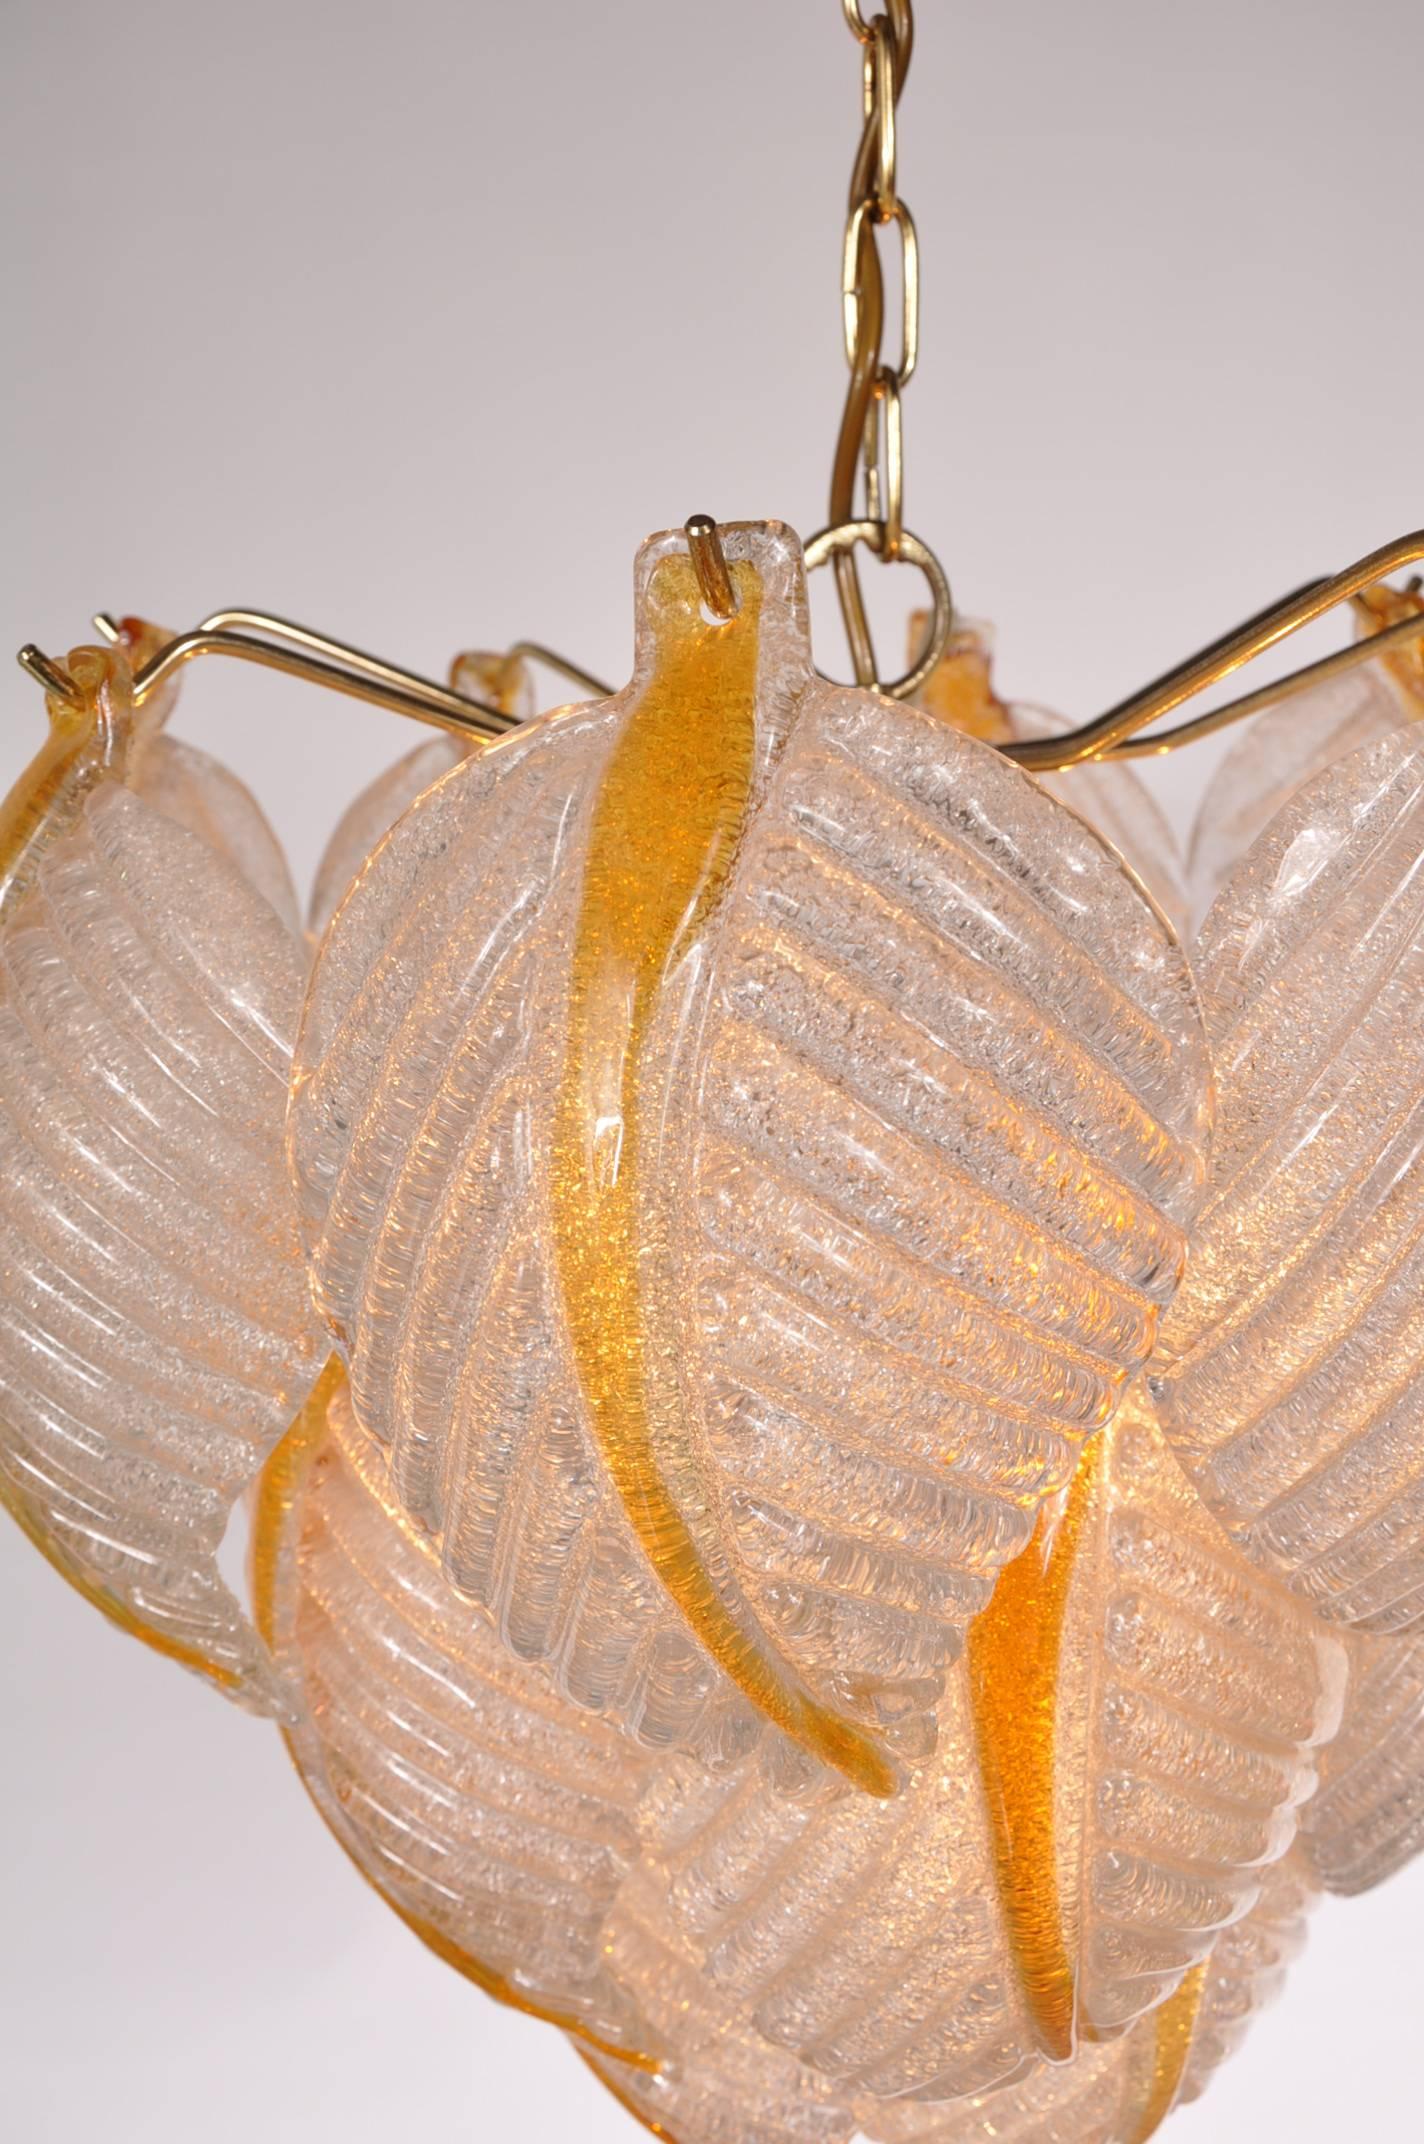 Attrayante lampe de plafond en verre de Murano par Mazzega, fabriquée en Italie vers 1960.

Cette pièce étonnante se compose de plusieurs feuilles en verre de Murano de haute qualité, maintenues ensemble par des bras en laiton. Cette structure